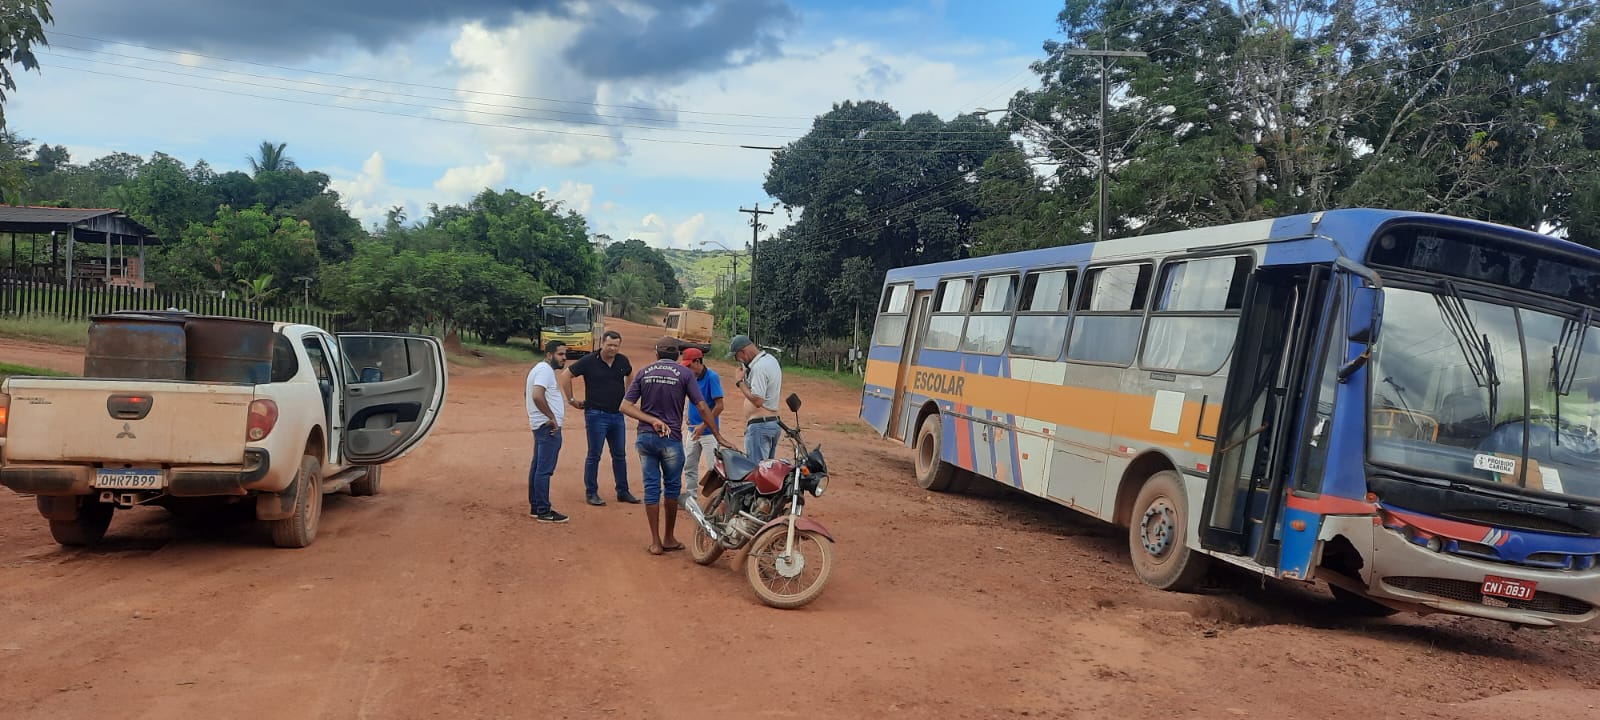 Vereador Professor Hermes fiscaliza condições dos ônibus de transporte escolar na região do Seringal e 14 de Abril